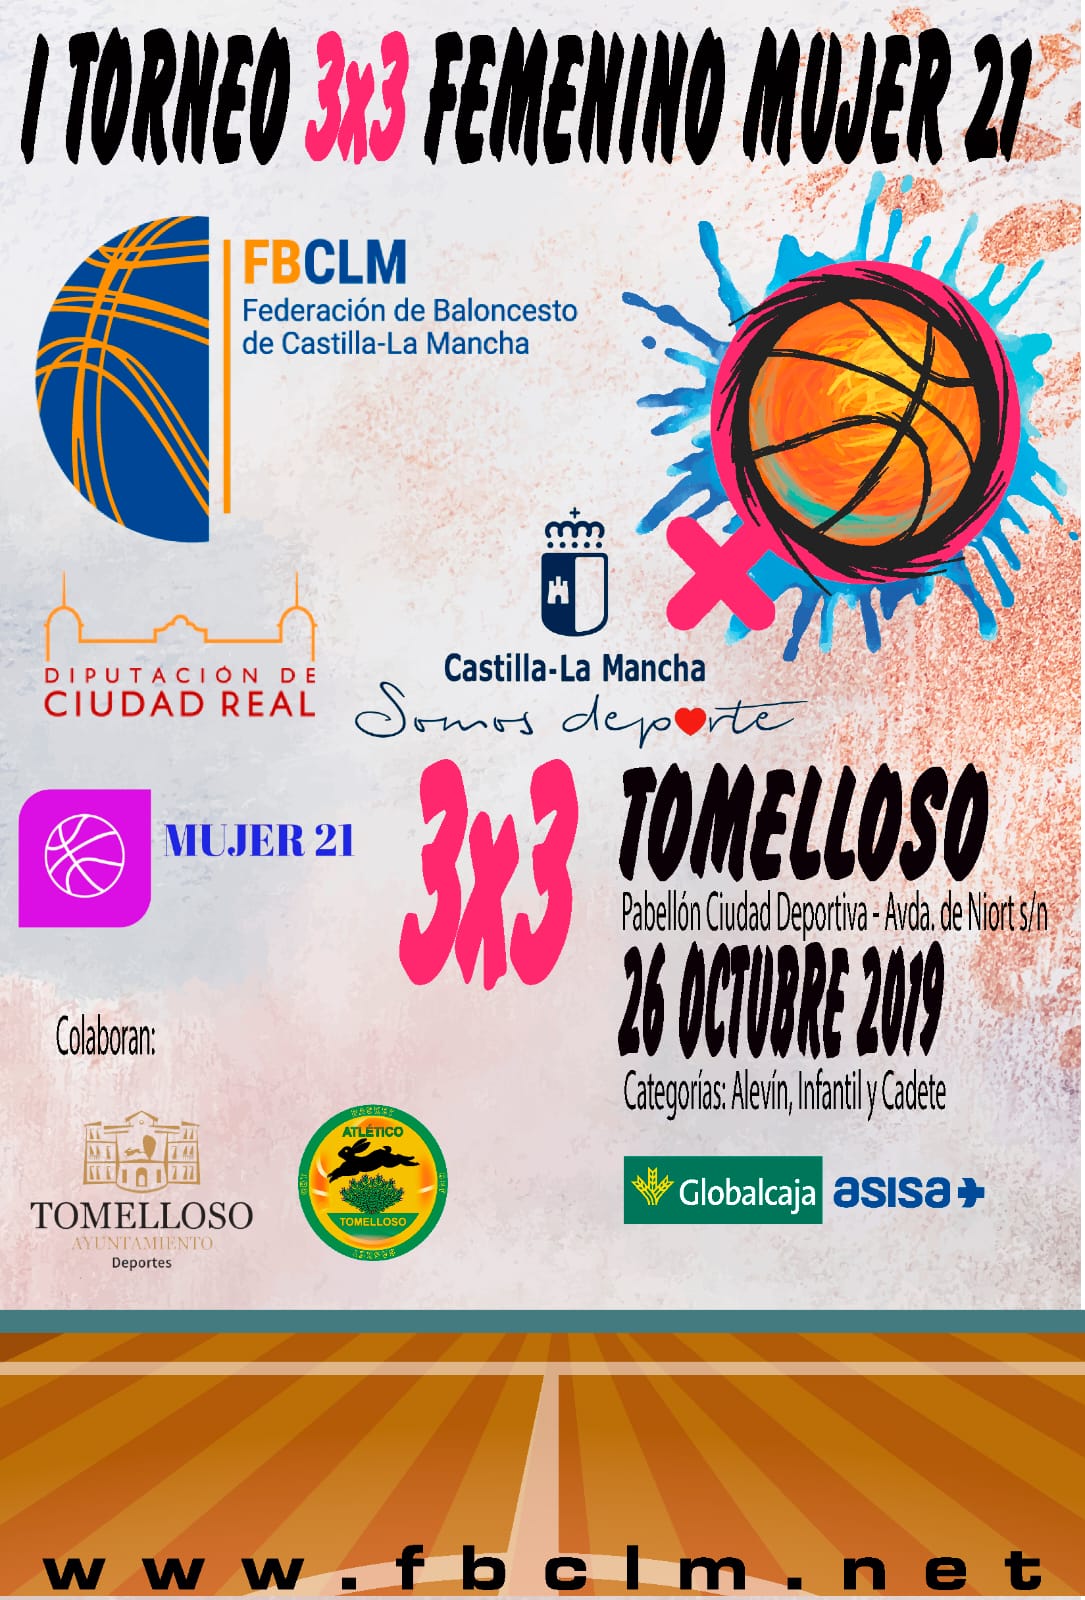 Solidaridad y deporte se unen este domingo con la jornada contra el cáncer de mama del Basket Atlético Tomelloso